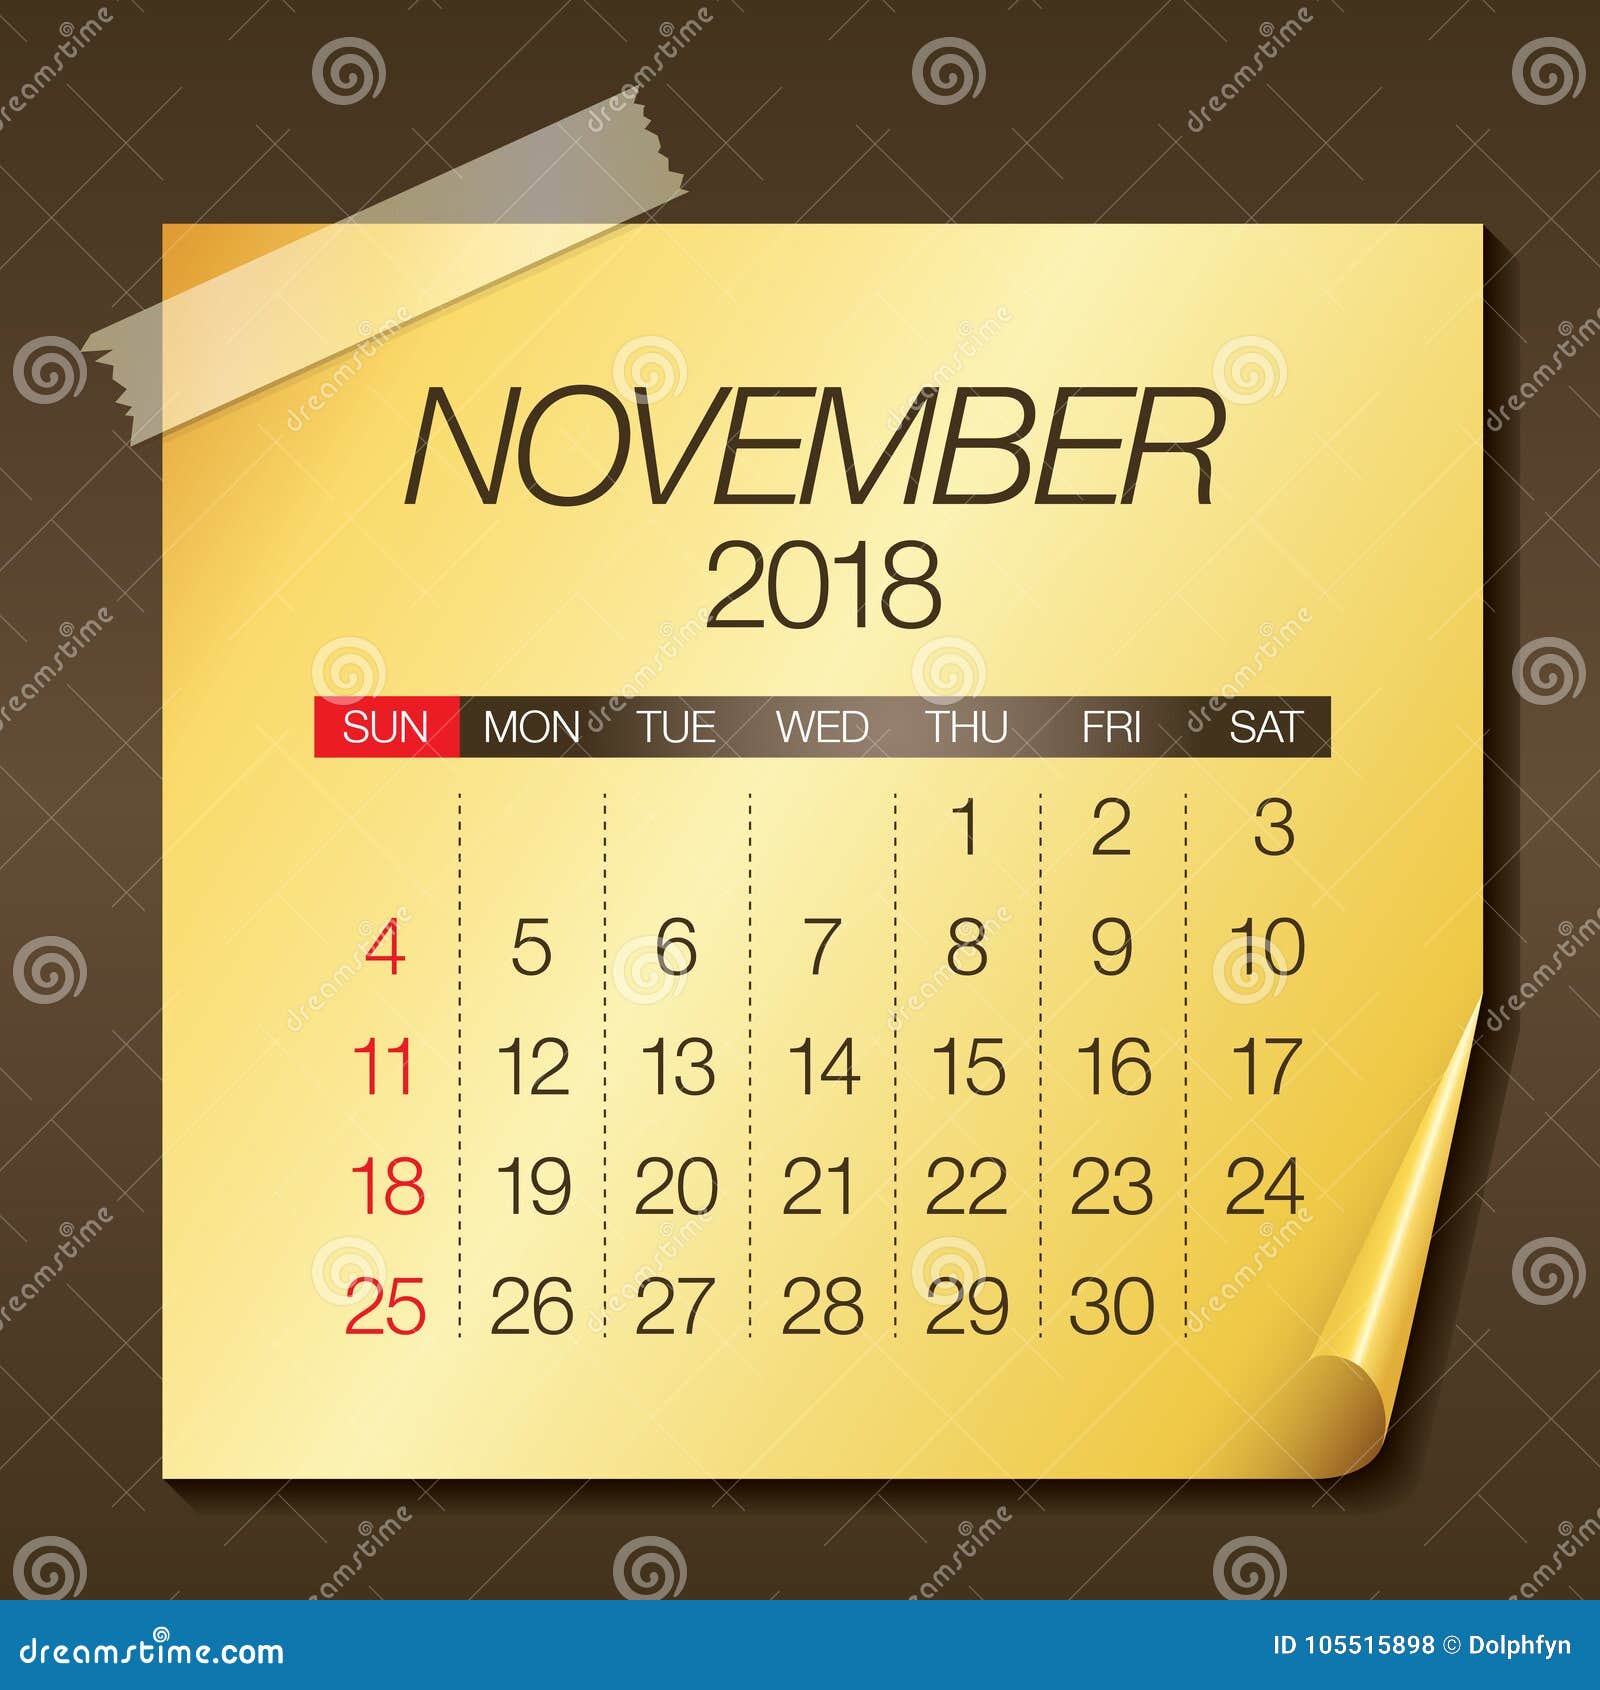 November 2018 Calendar Vector Illustration